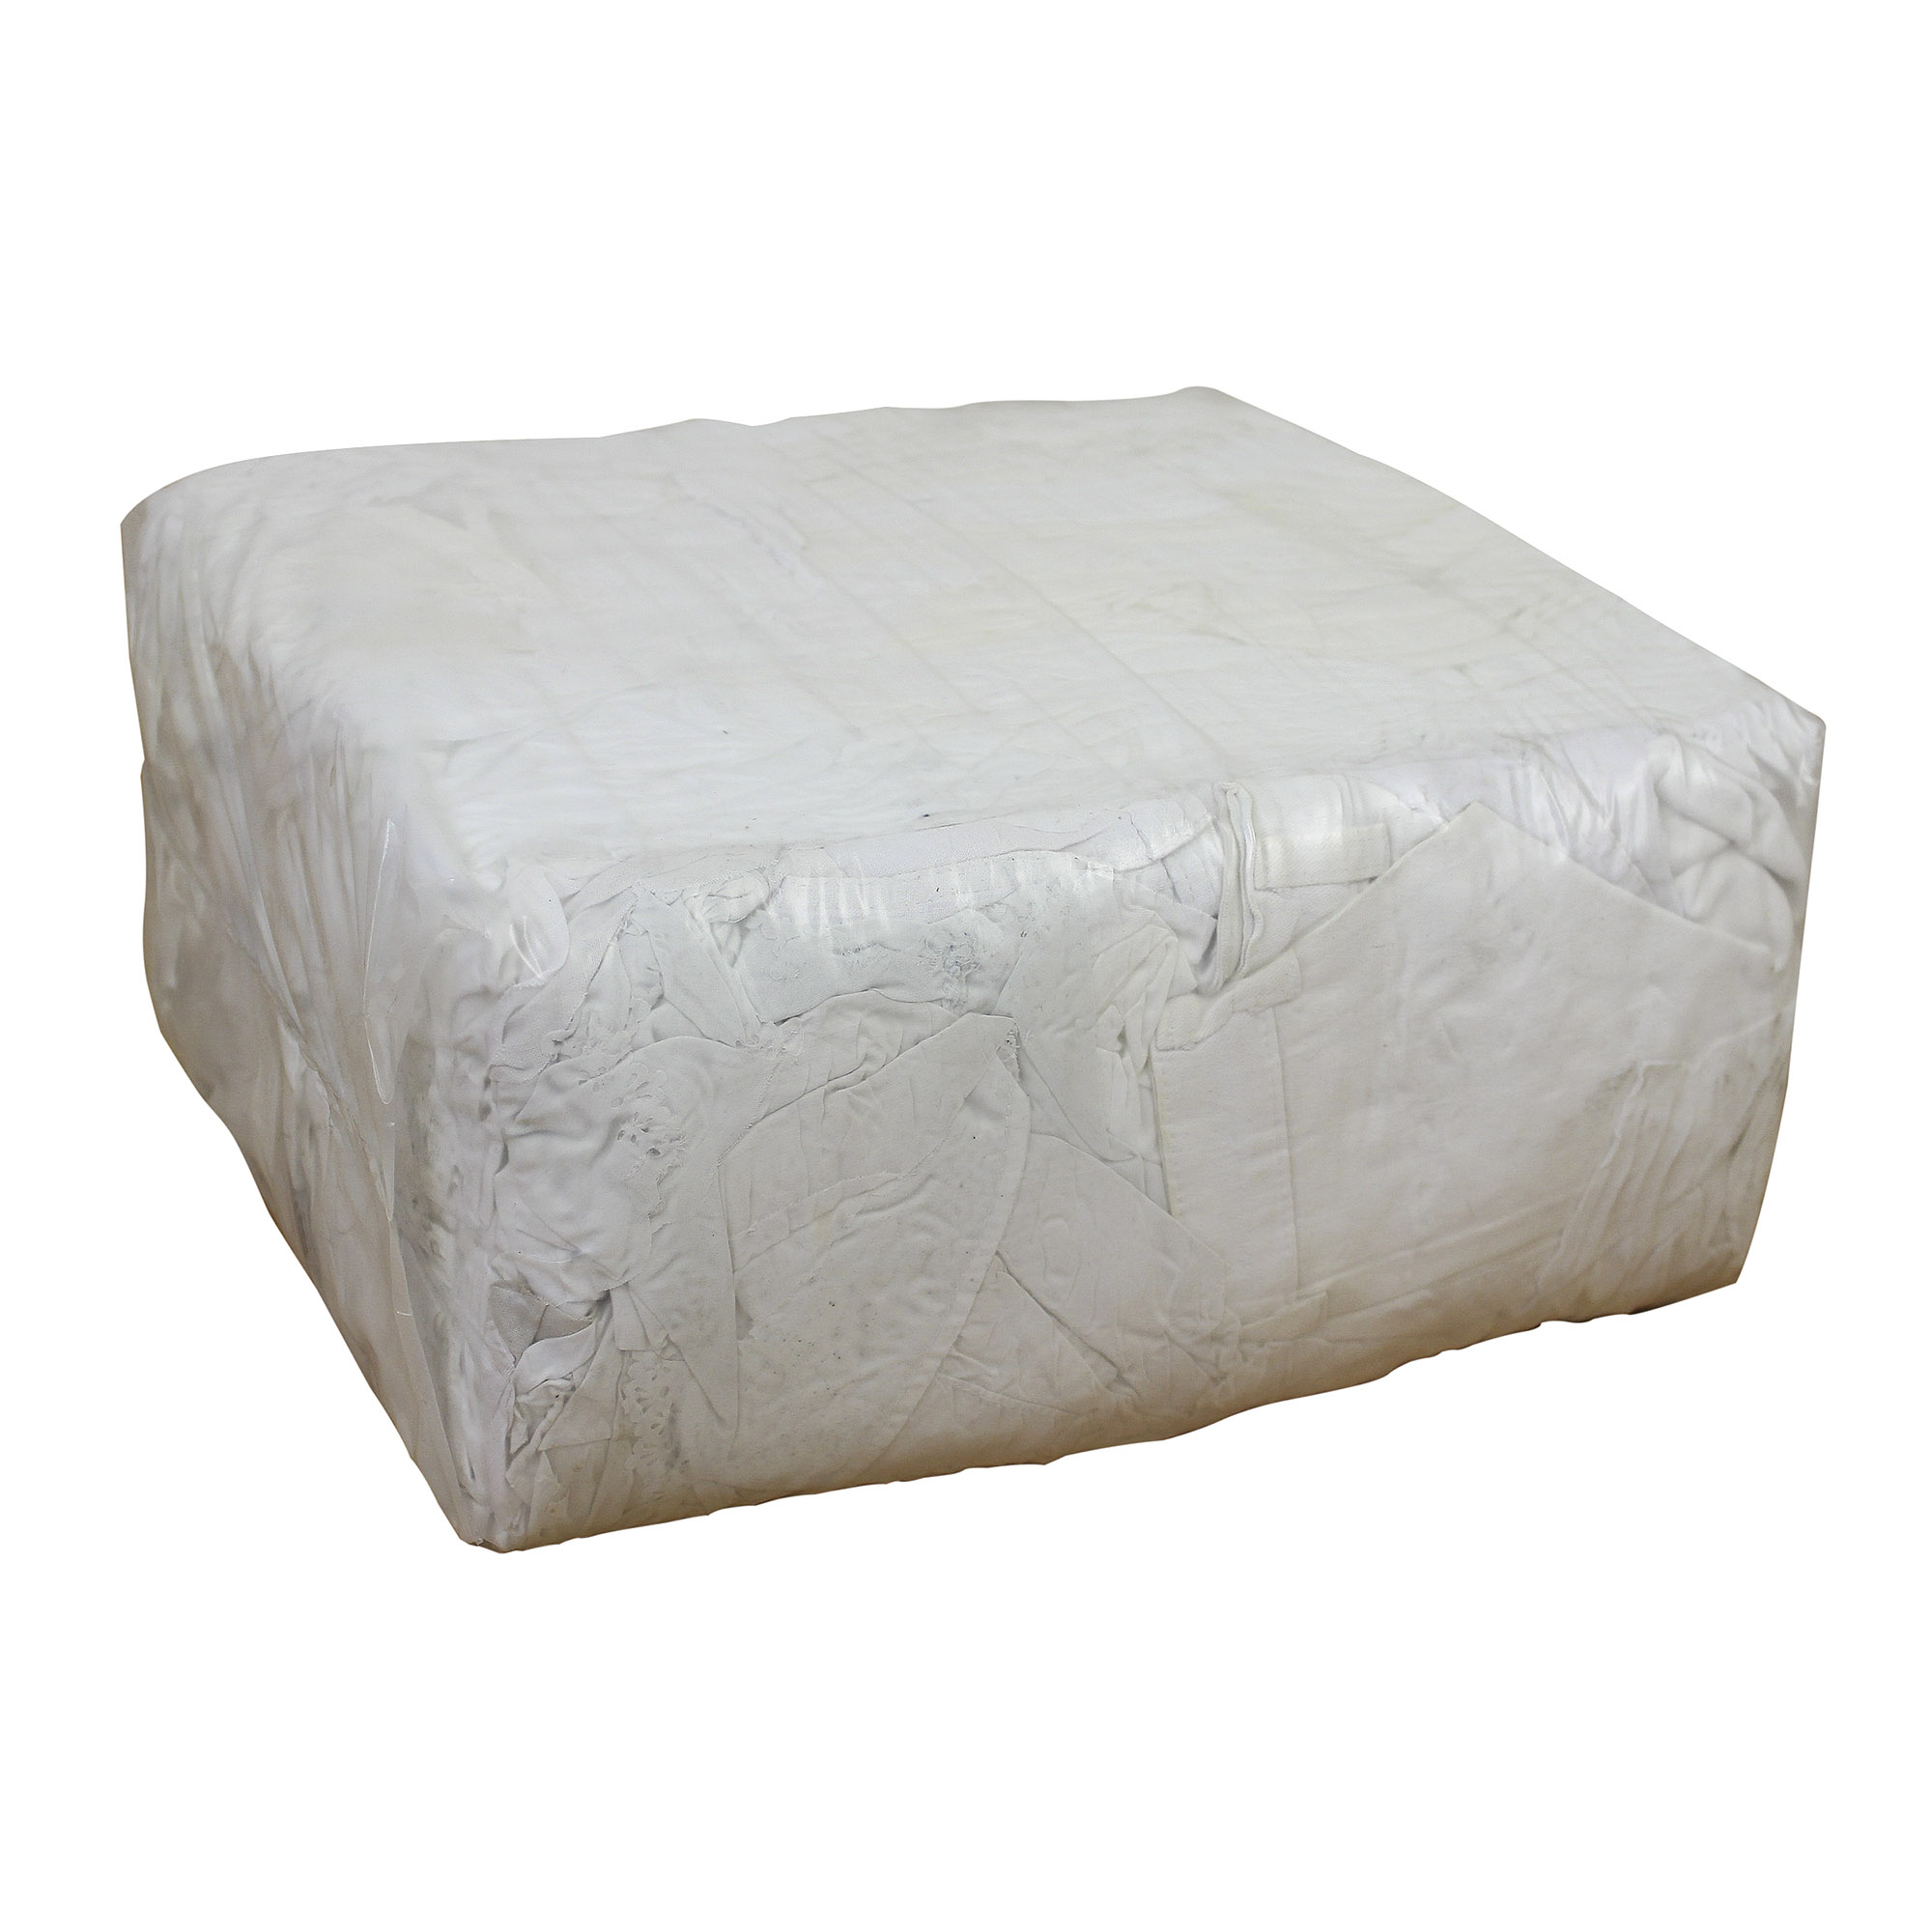 Putzlappen aus weißer 100er Baumwolle im 10 kg Paket